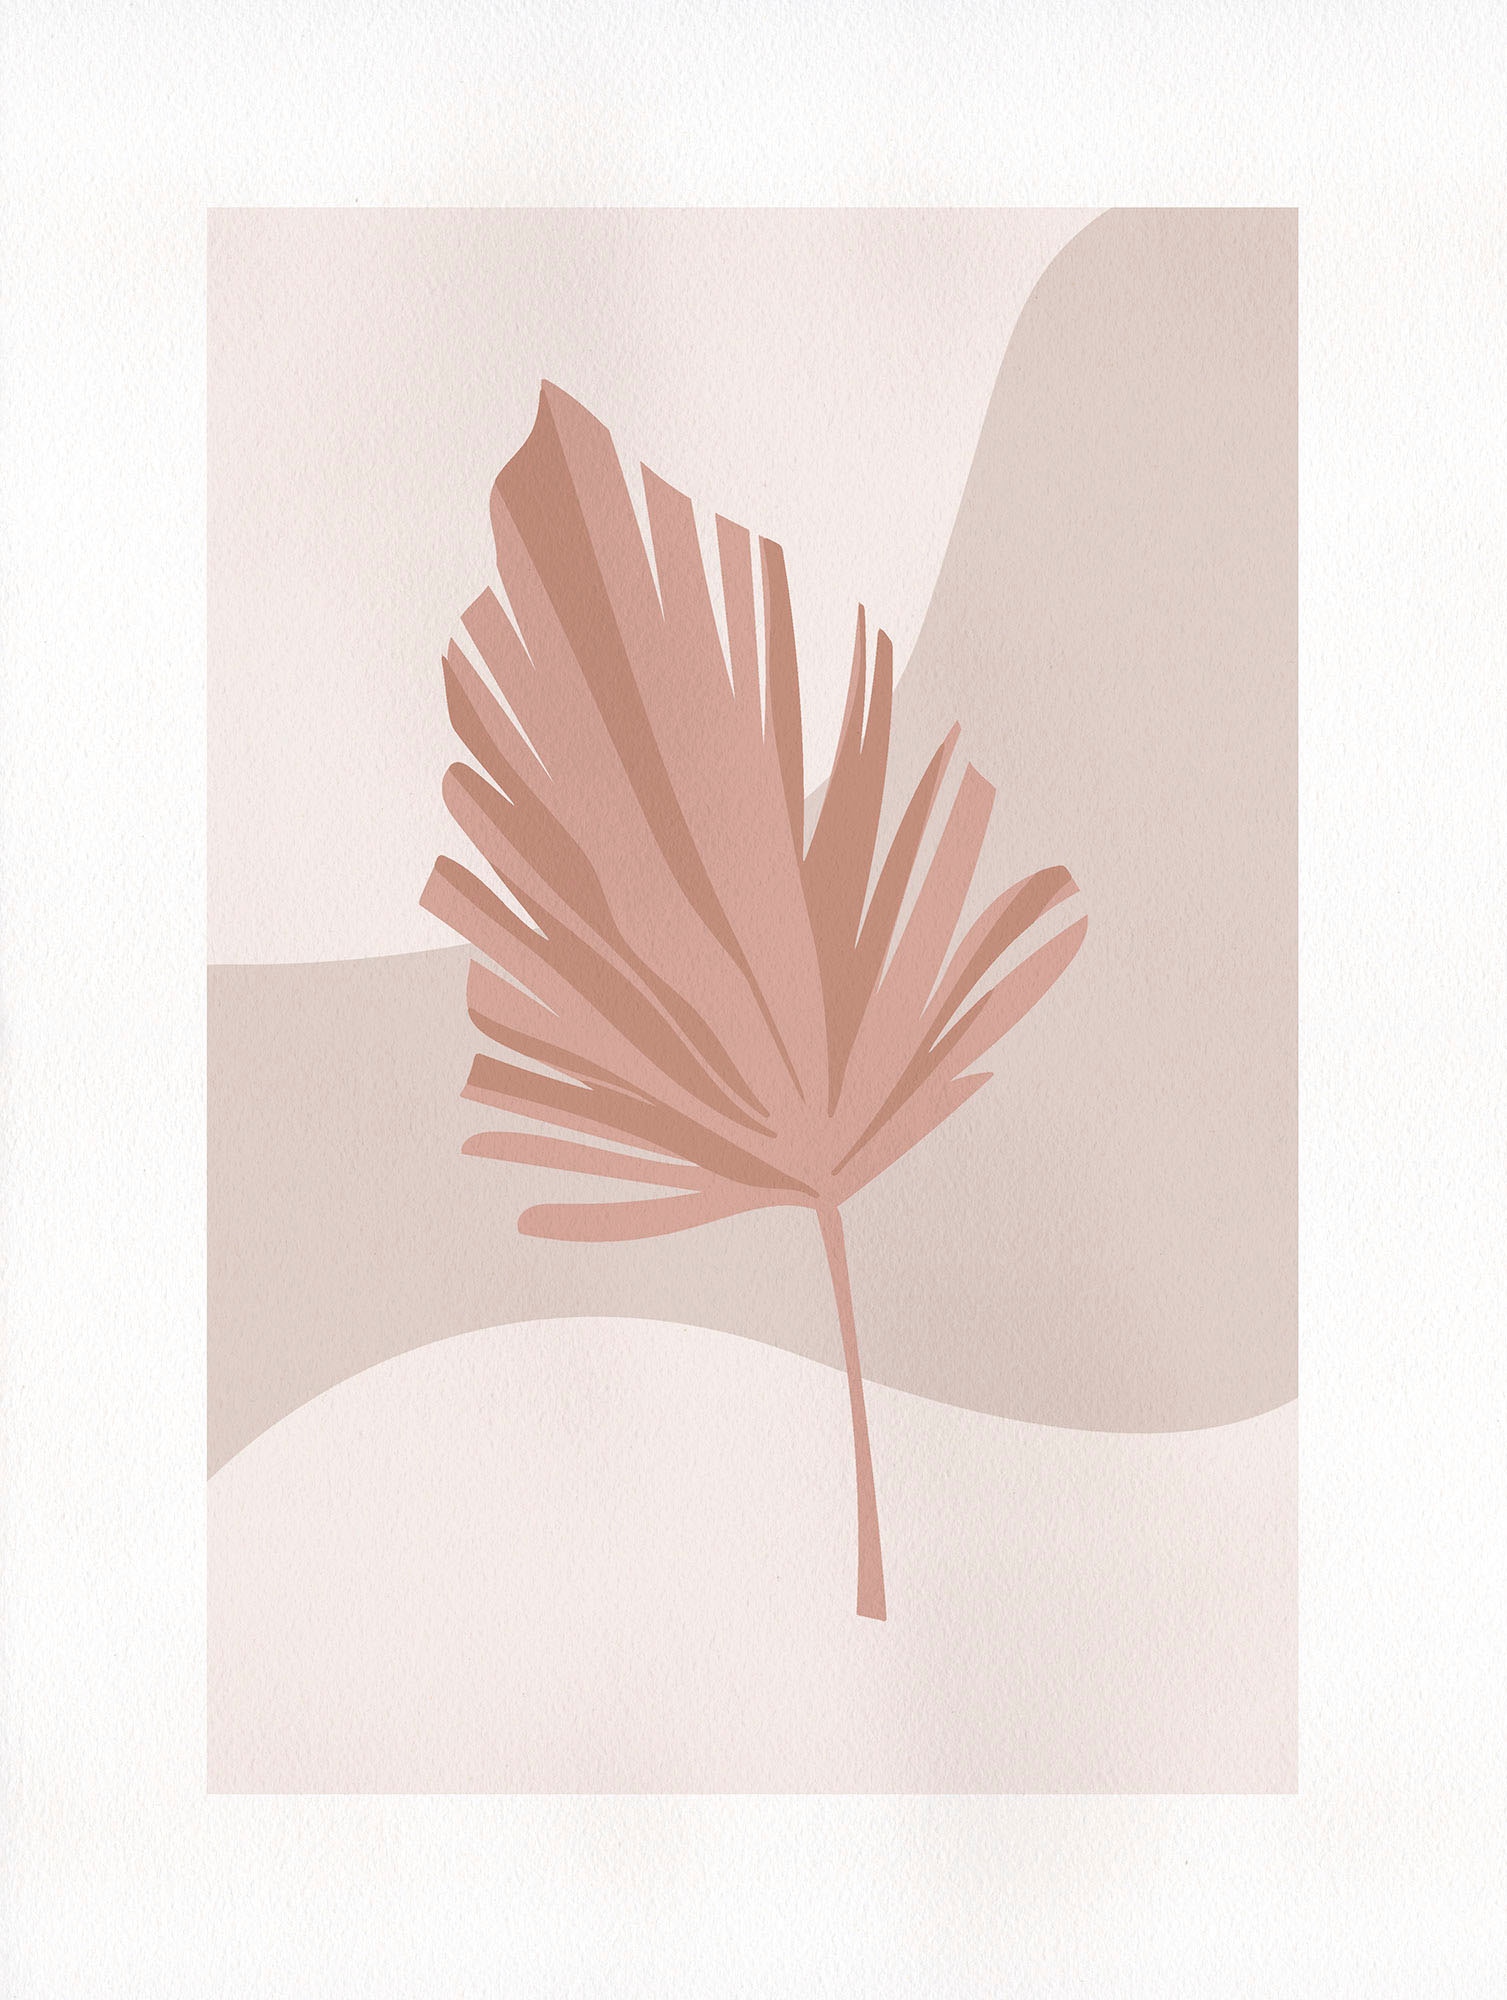 Komar Wandbild »Minimalist Leaf Lover«, (1 St.), Deutsches Premium-Poster Fotopapier mit seidenmatter Oberfläche und hoher Lichtbeständigkeit. Für fotorealistische Drucke mit gestochen scharfen Details und hervorragender Farbbrillanz.